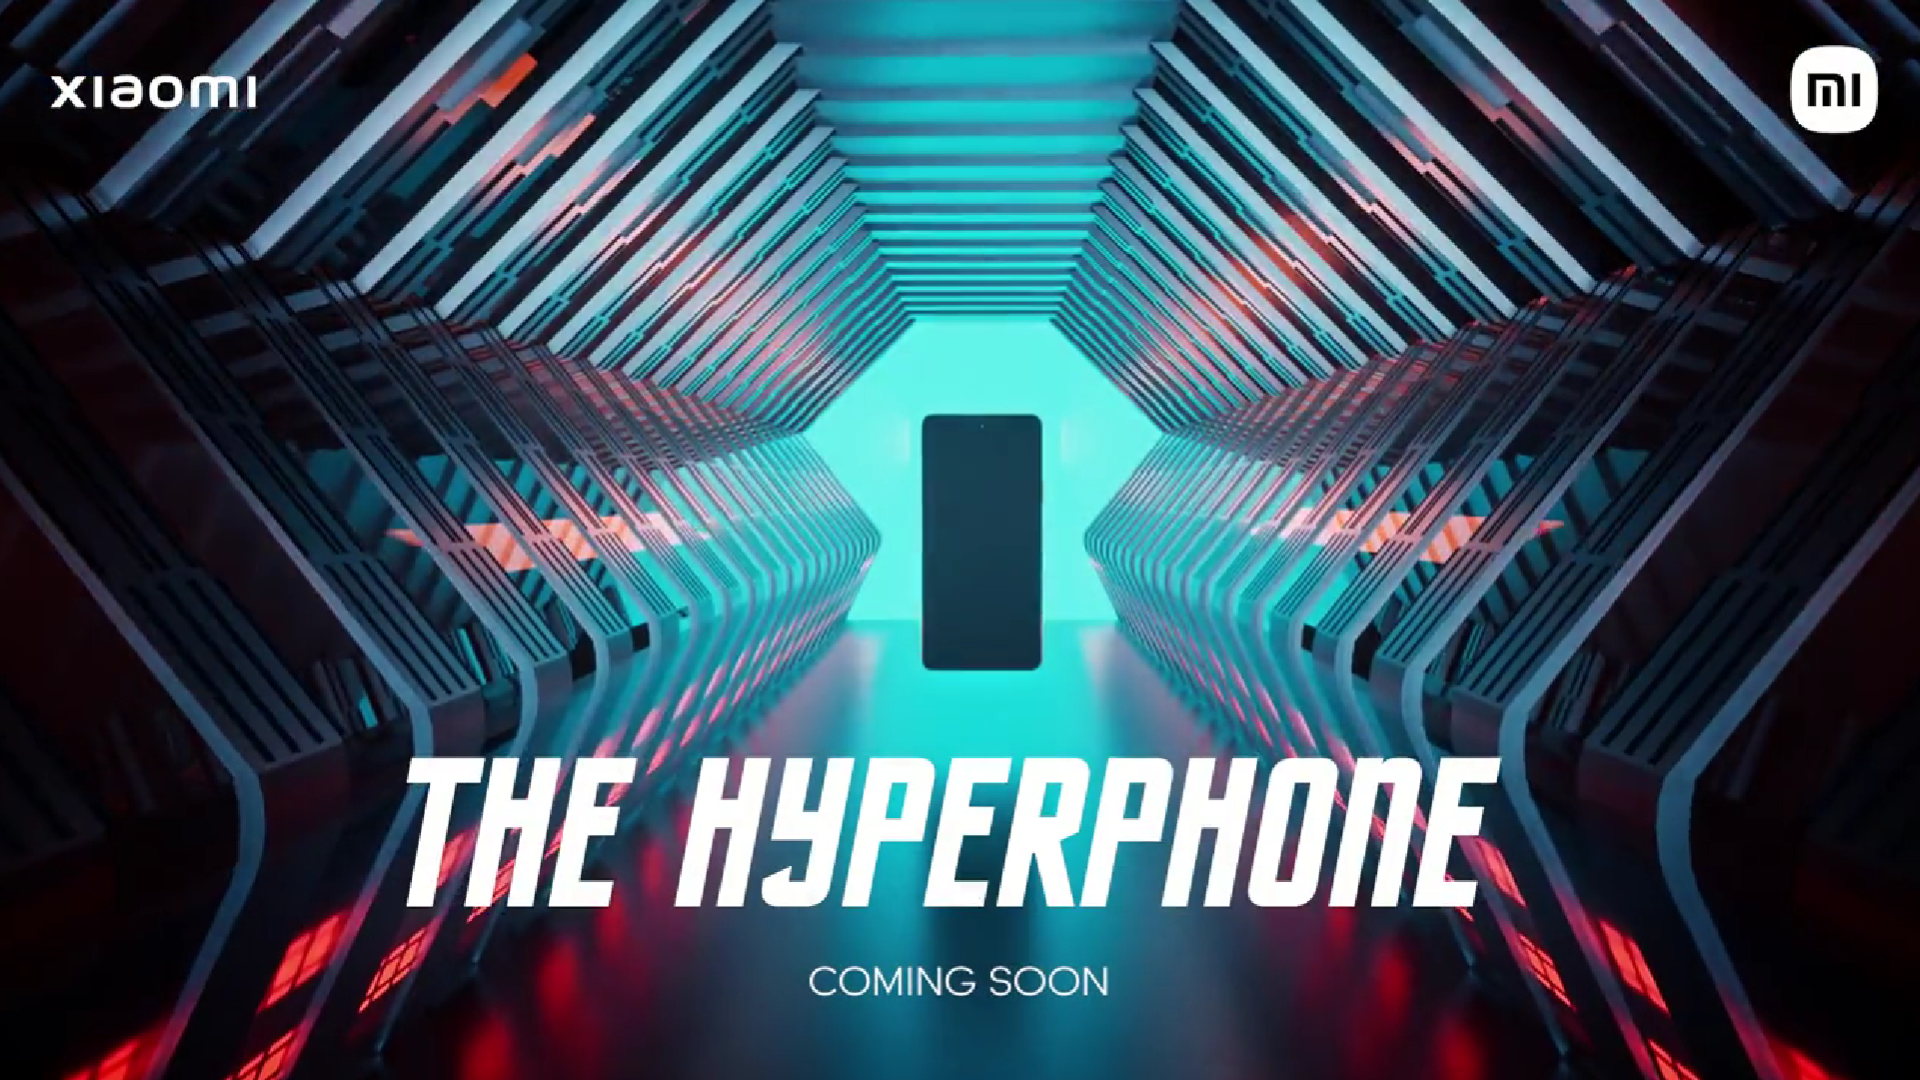 Xiaomi verspricht, ein revolutionäres "Hyperphone" vorzustellen